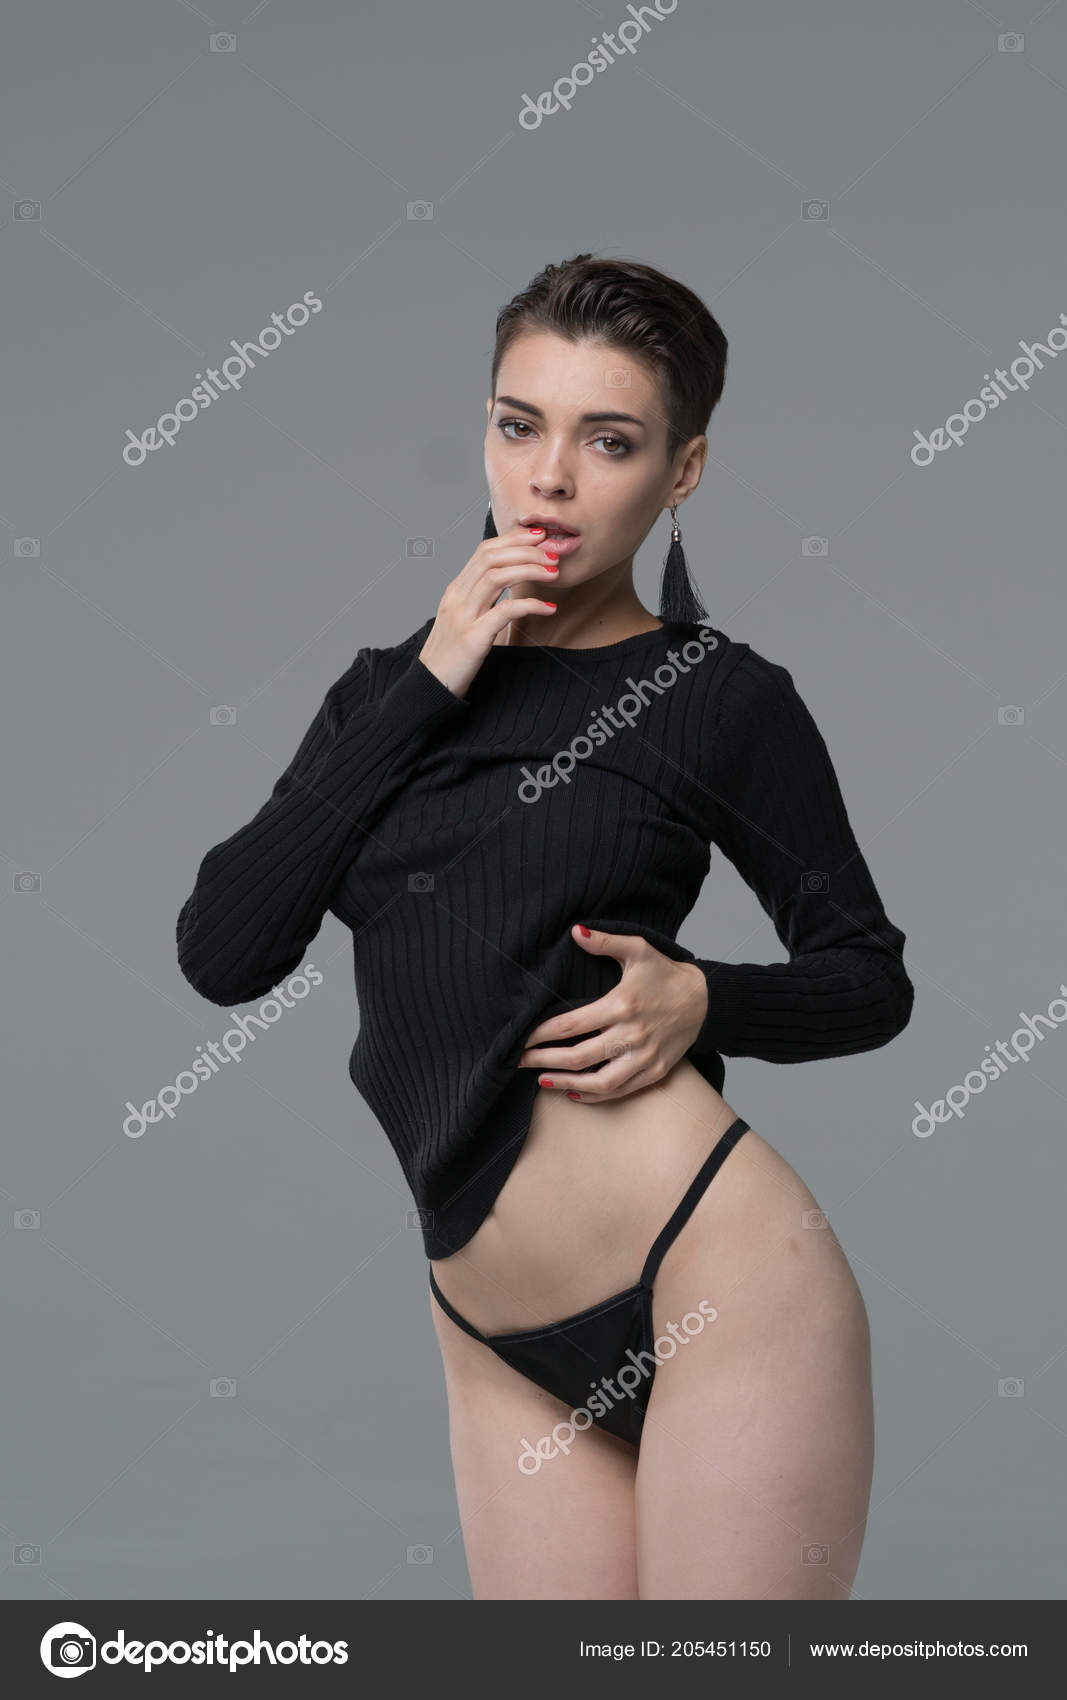 https://st4.depositphotos.com/10086424/20545/i/1600/depositphotos_205451150-stock-photo-young-beautiful-girl-posing-studio.jpg